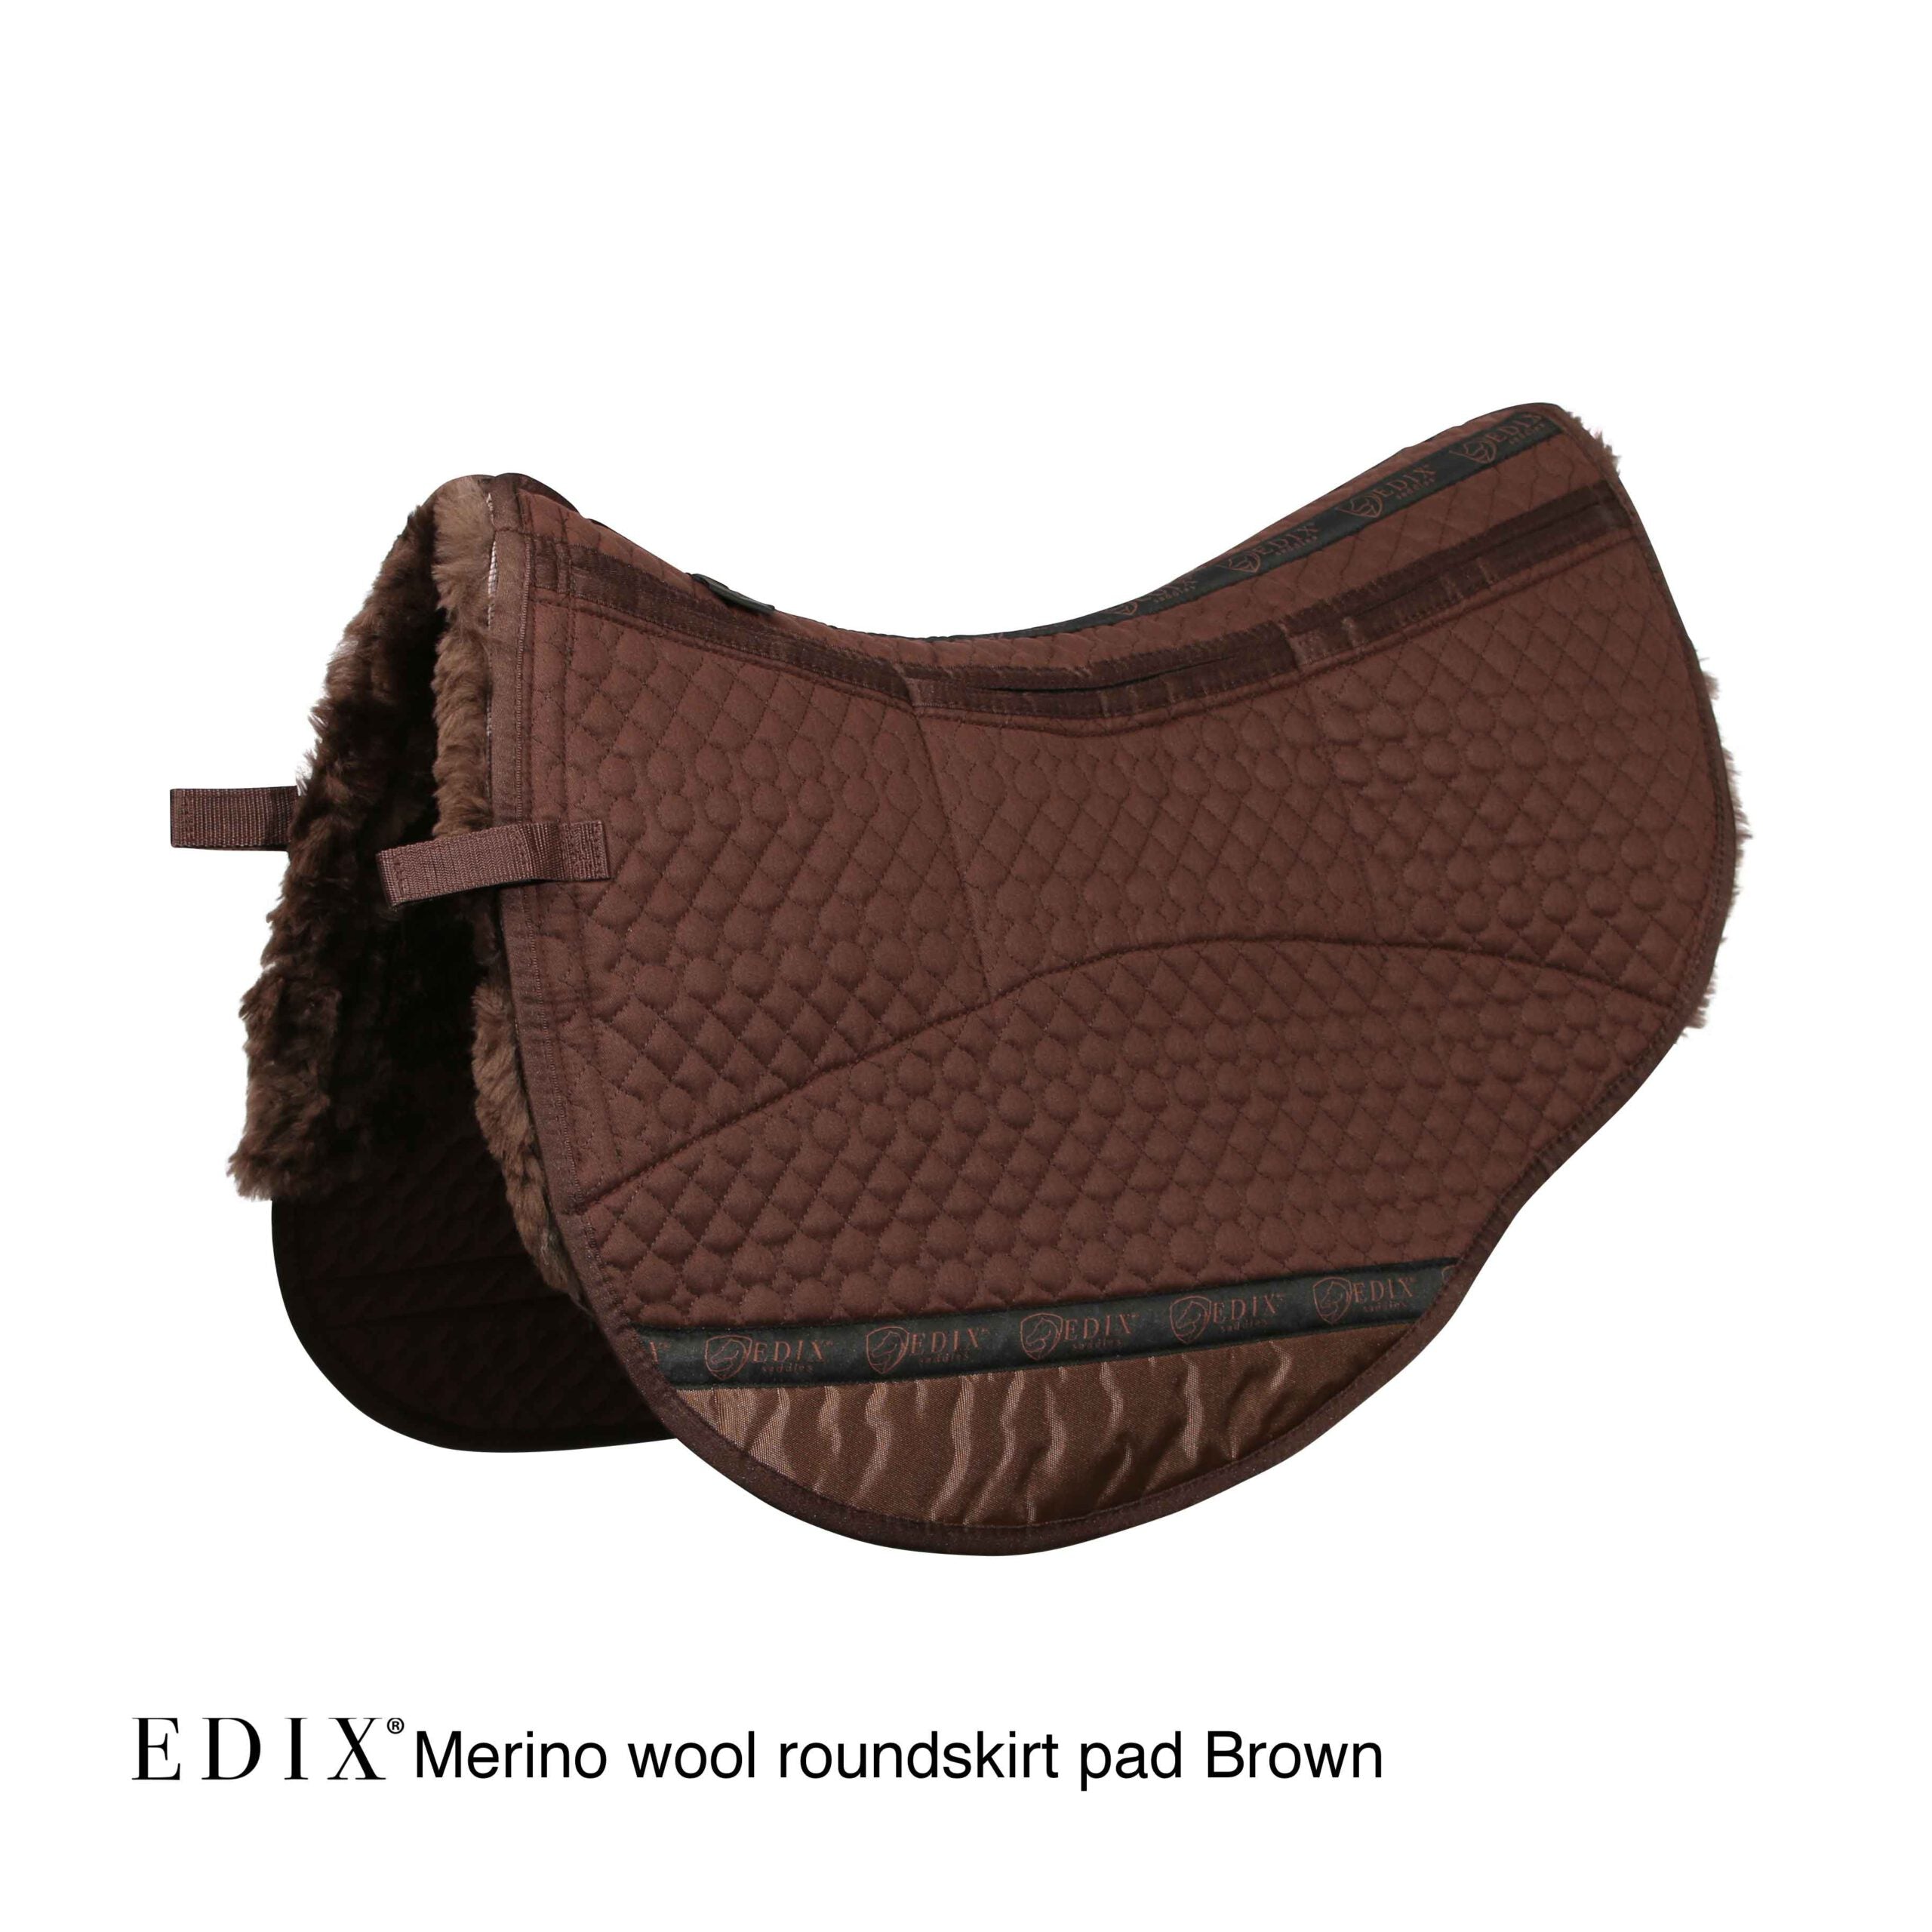 EDIX Merino Sheepskin Roundskirt Pad